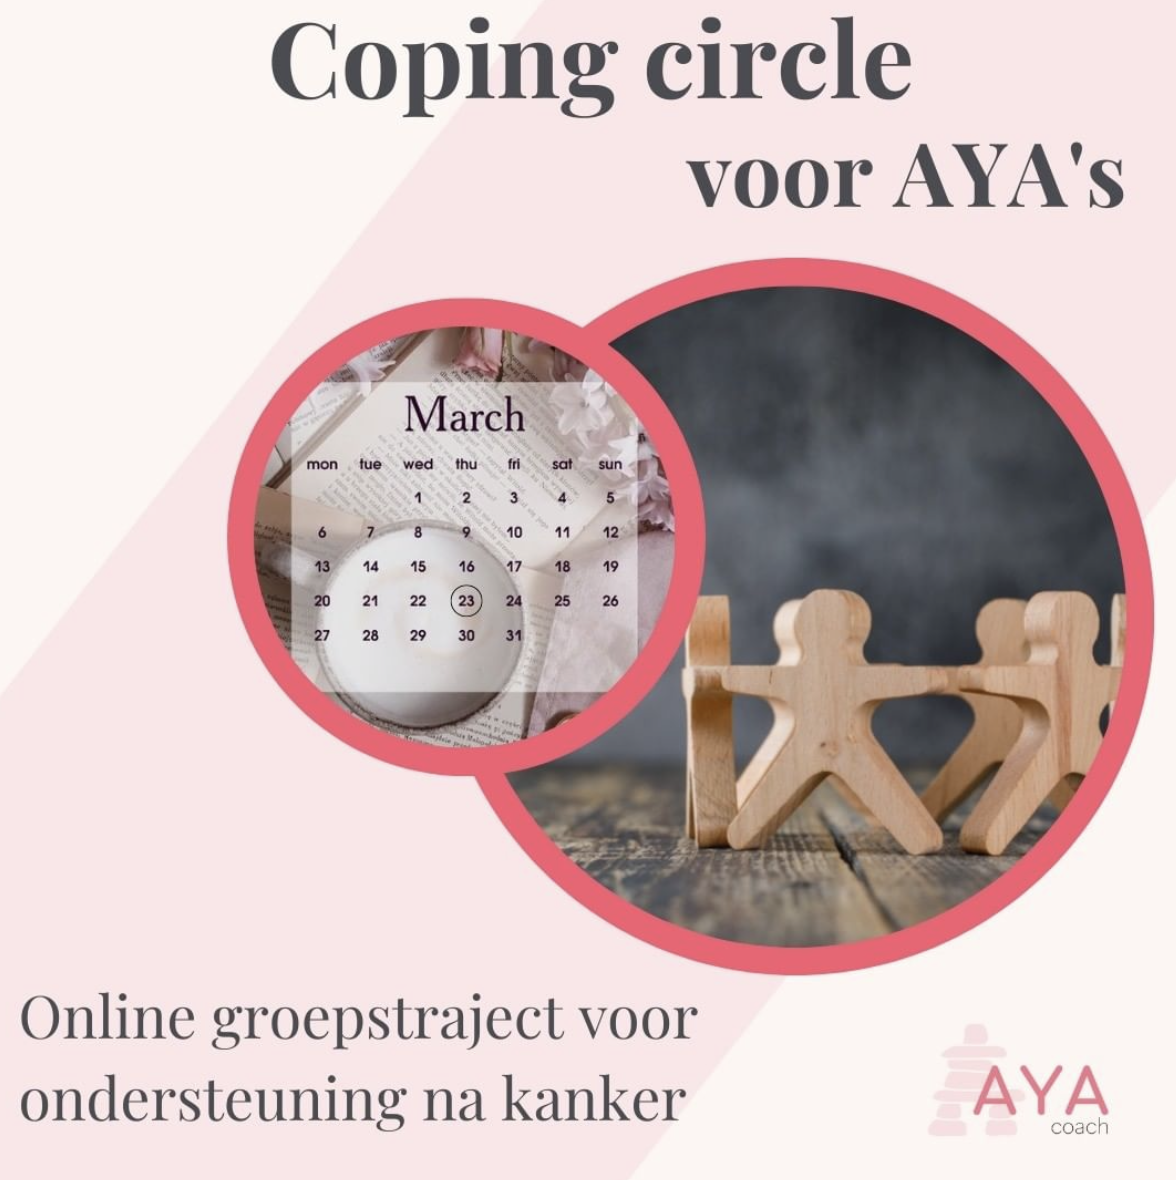 Coping Circles: ondersteuning voor aya's